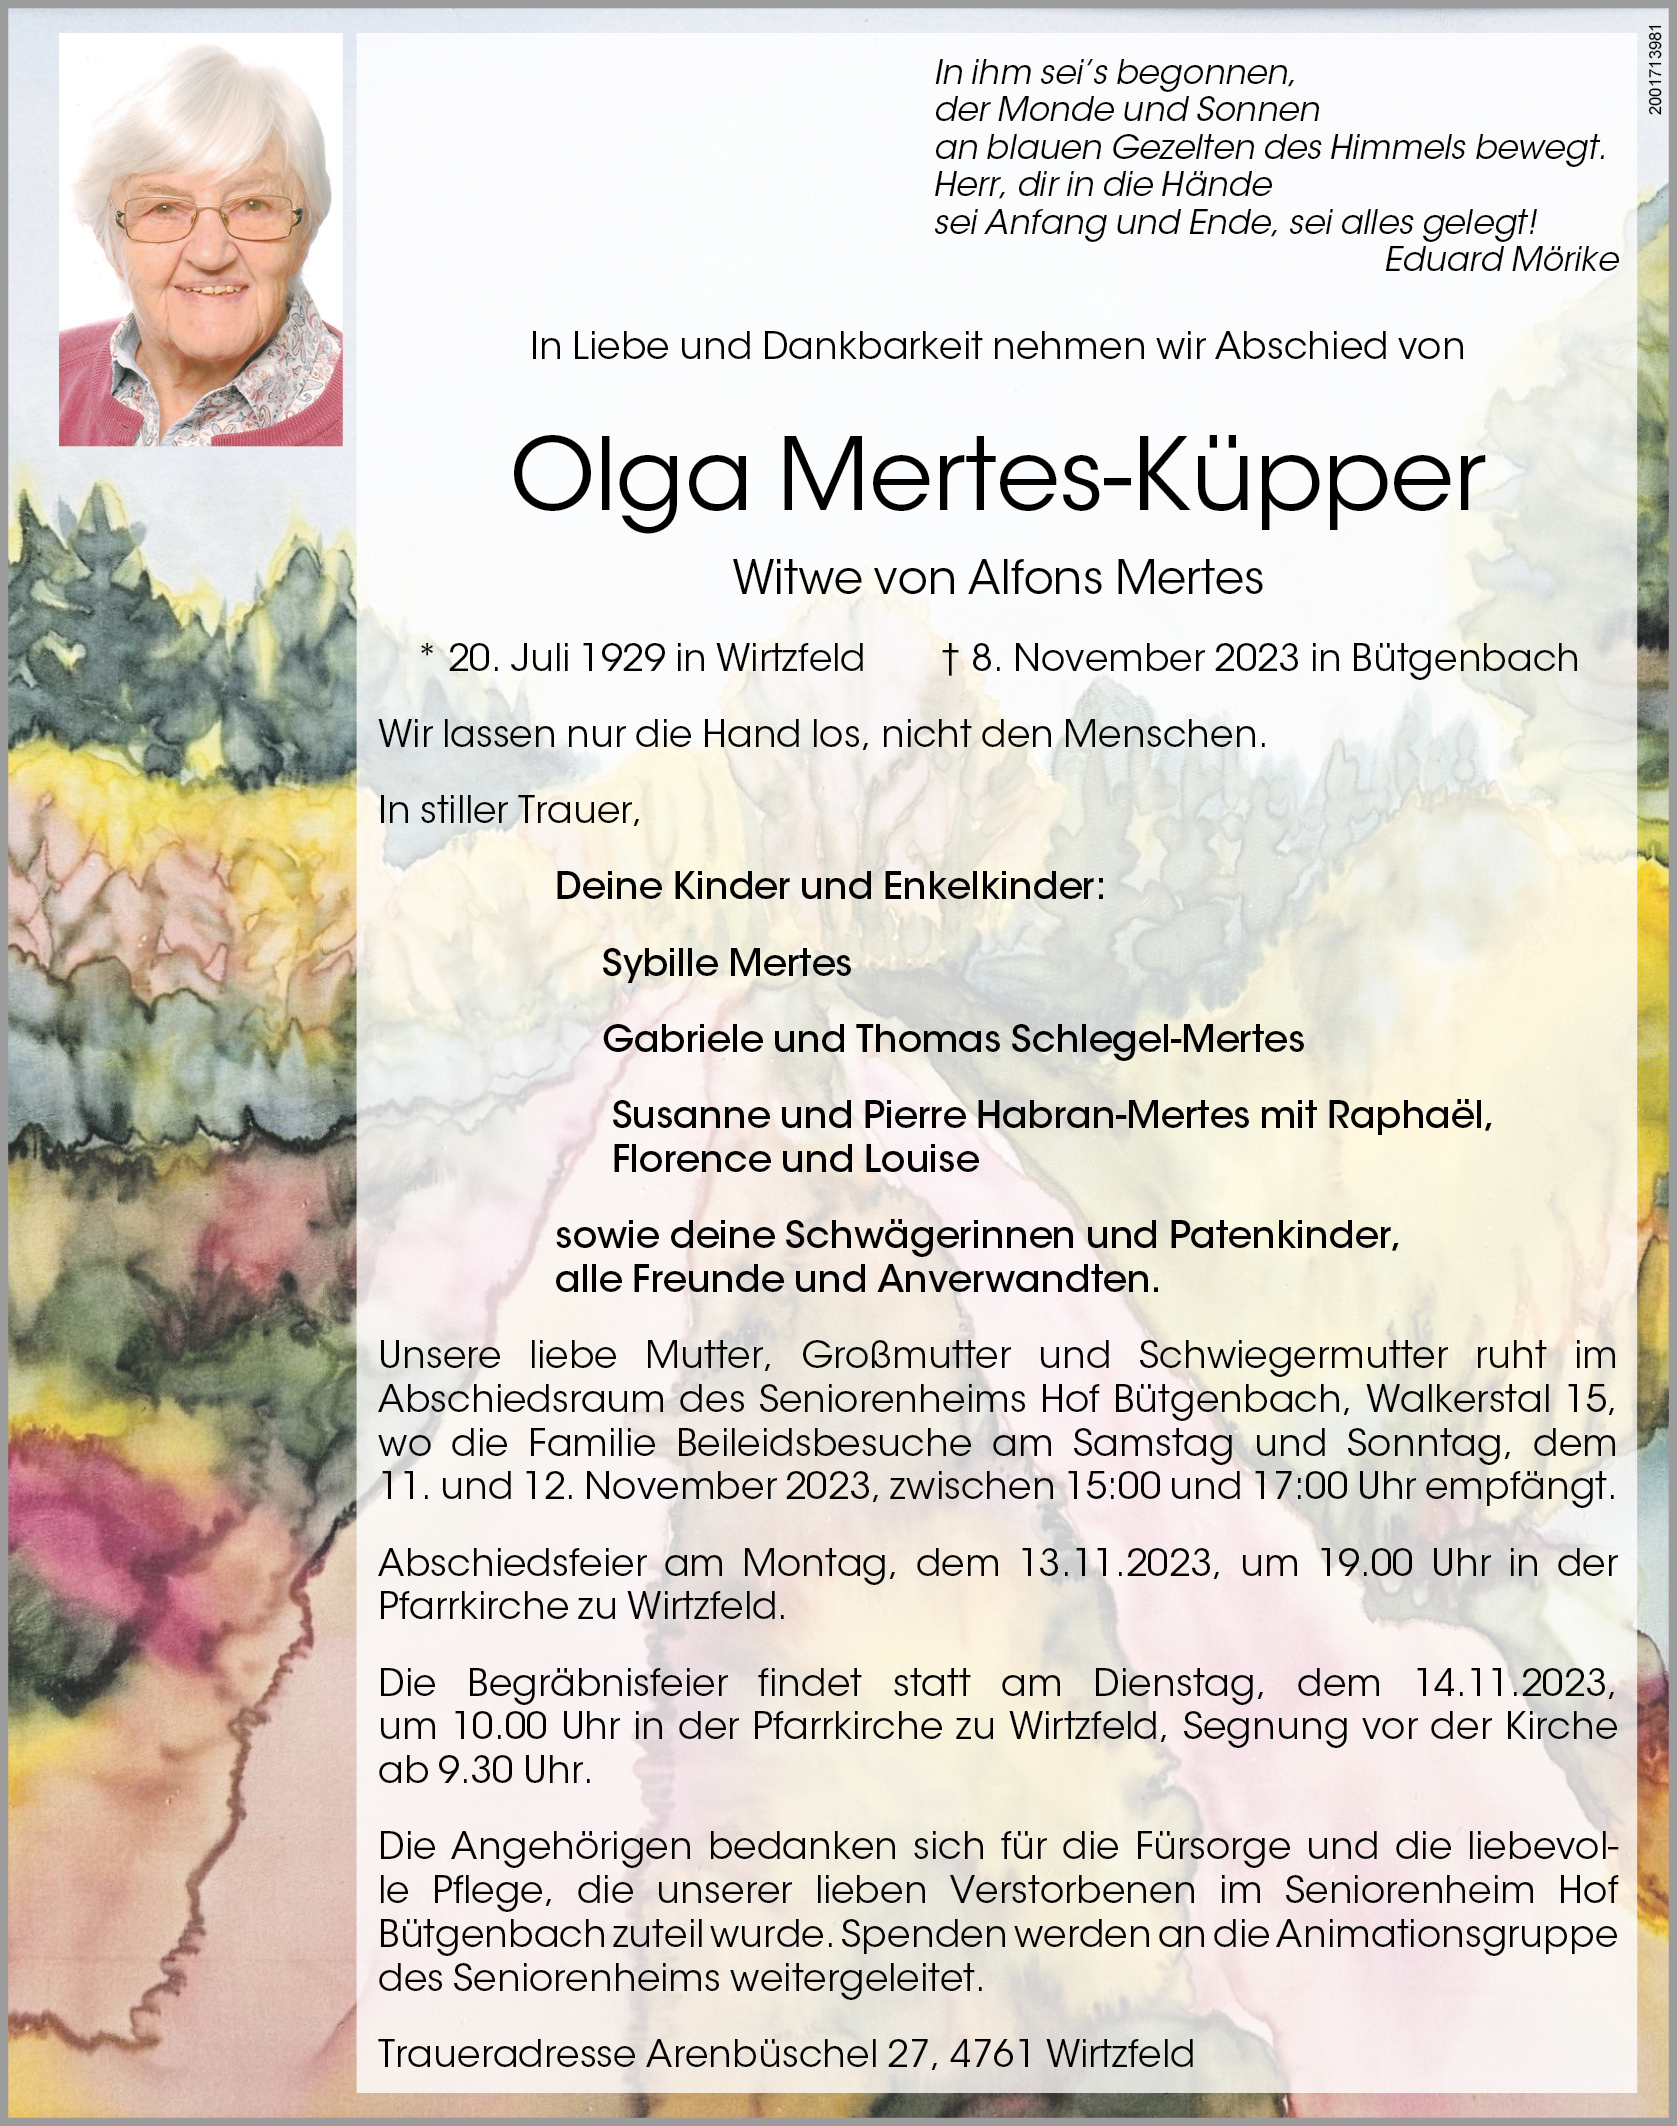 Olga Mertes-Küpper